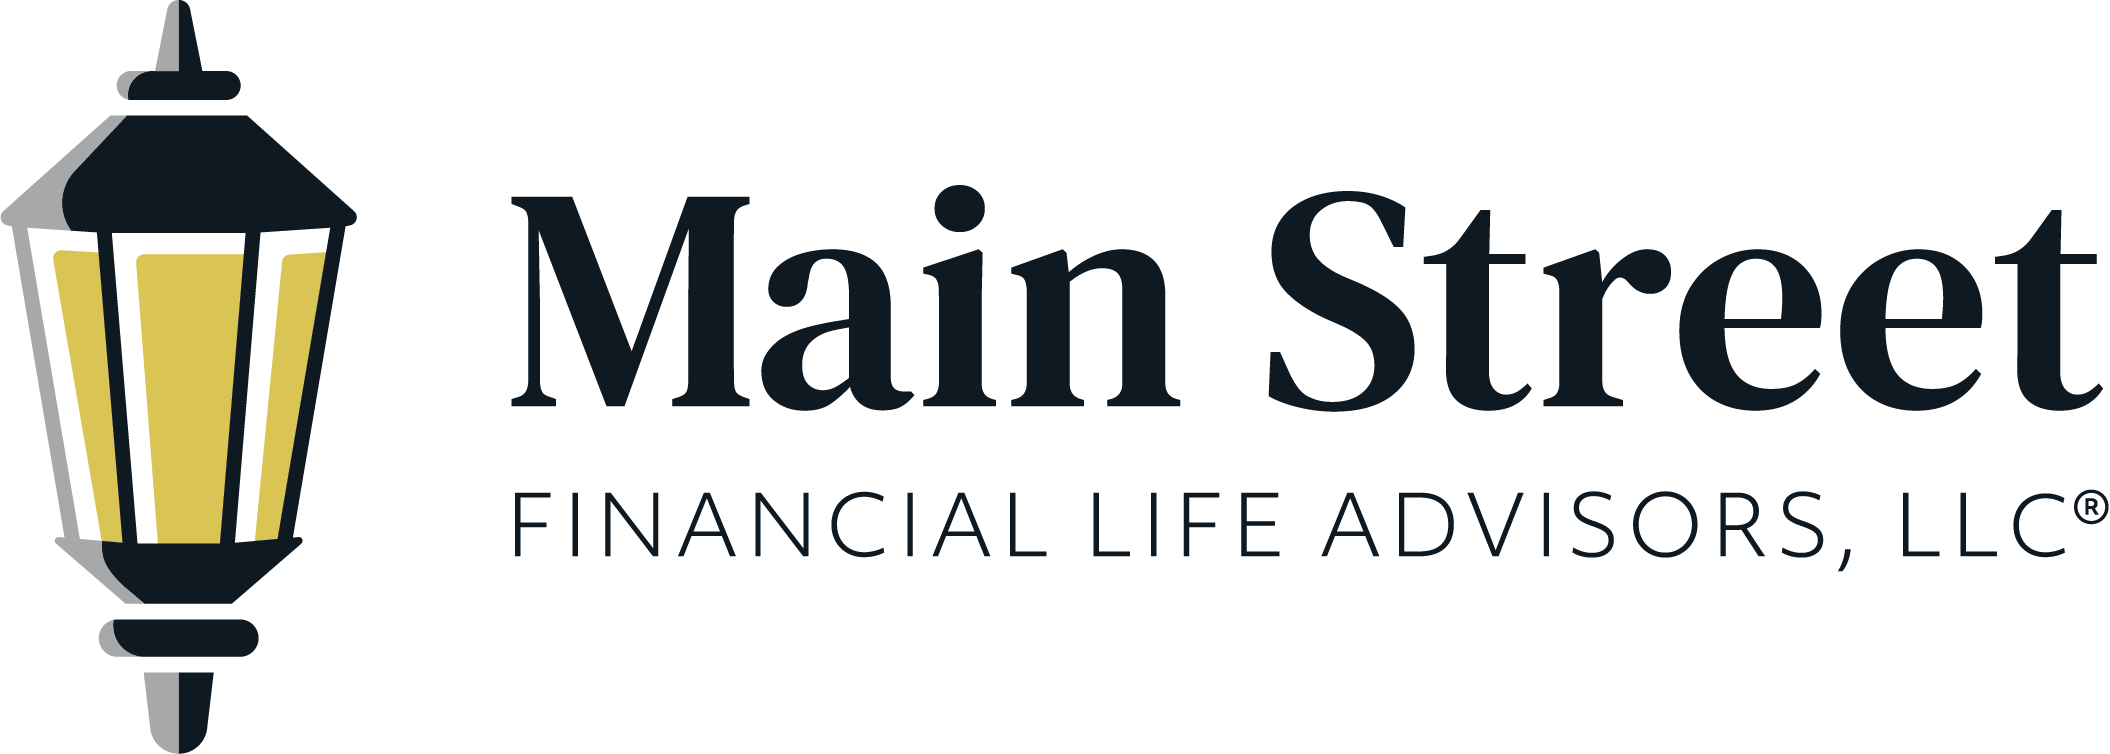 Chris Tooker - Main Street Financial Life Advisors, LLC®